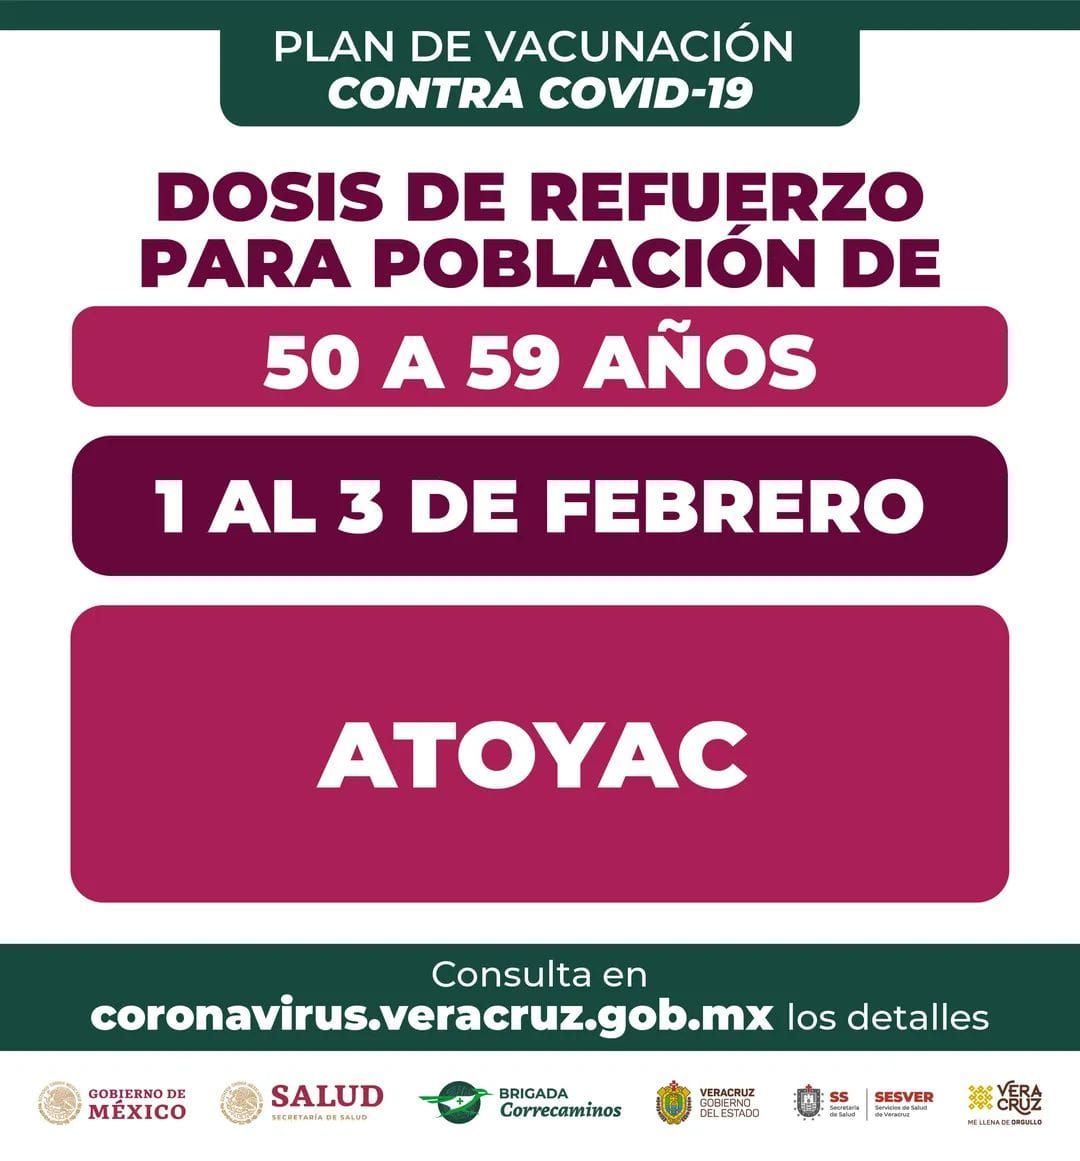 Aplicarán dosis de refuerzo contra Covid-19 a personas de 50 a 59 años en Atoyac
